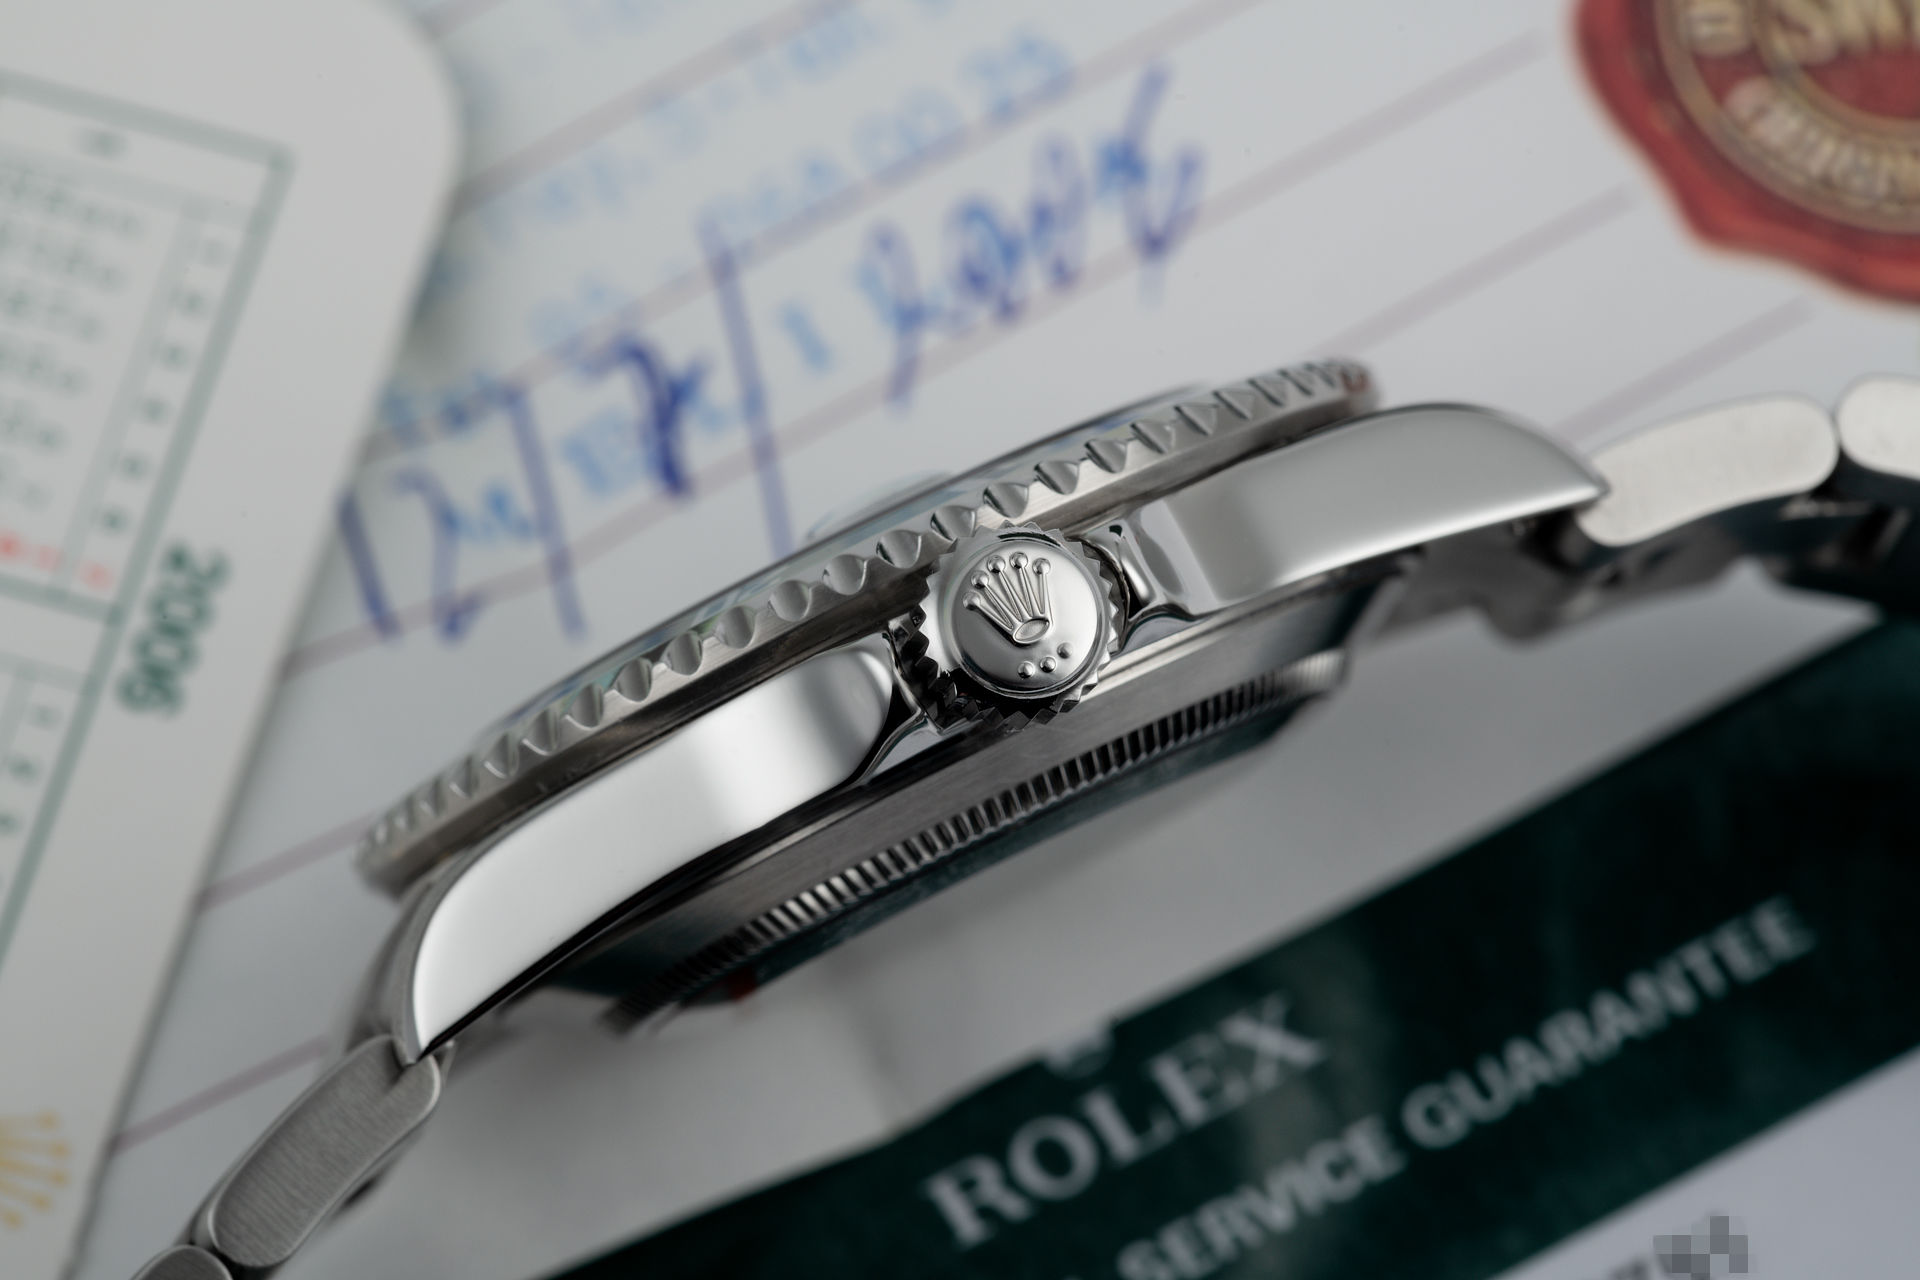 ref 16610LV | 'Box & Certificate' Under Rolex Warranty | Rolex Submariner Date